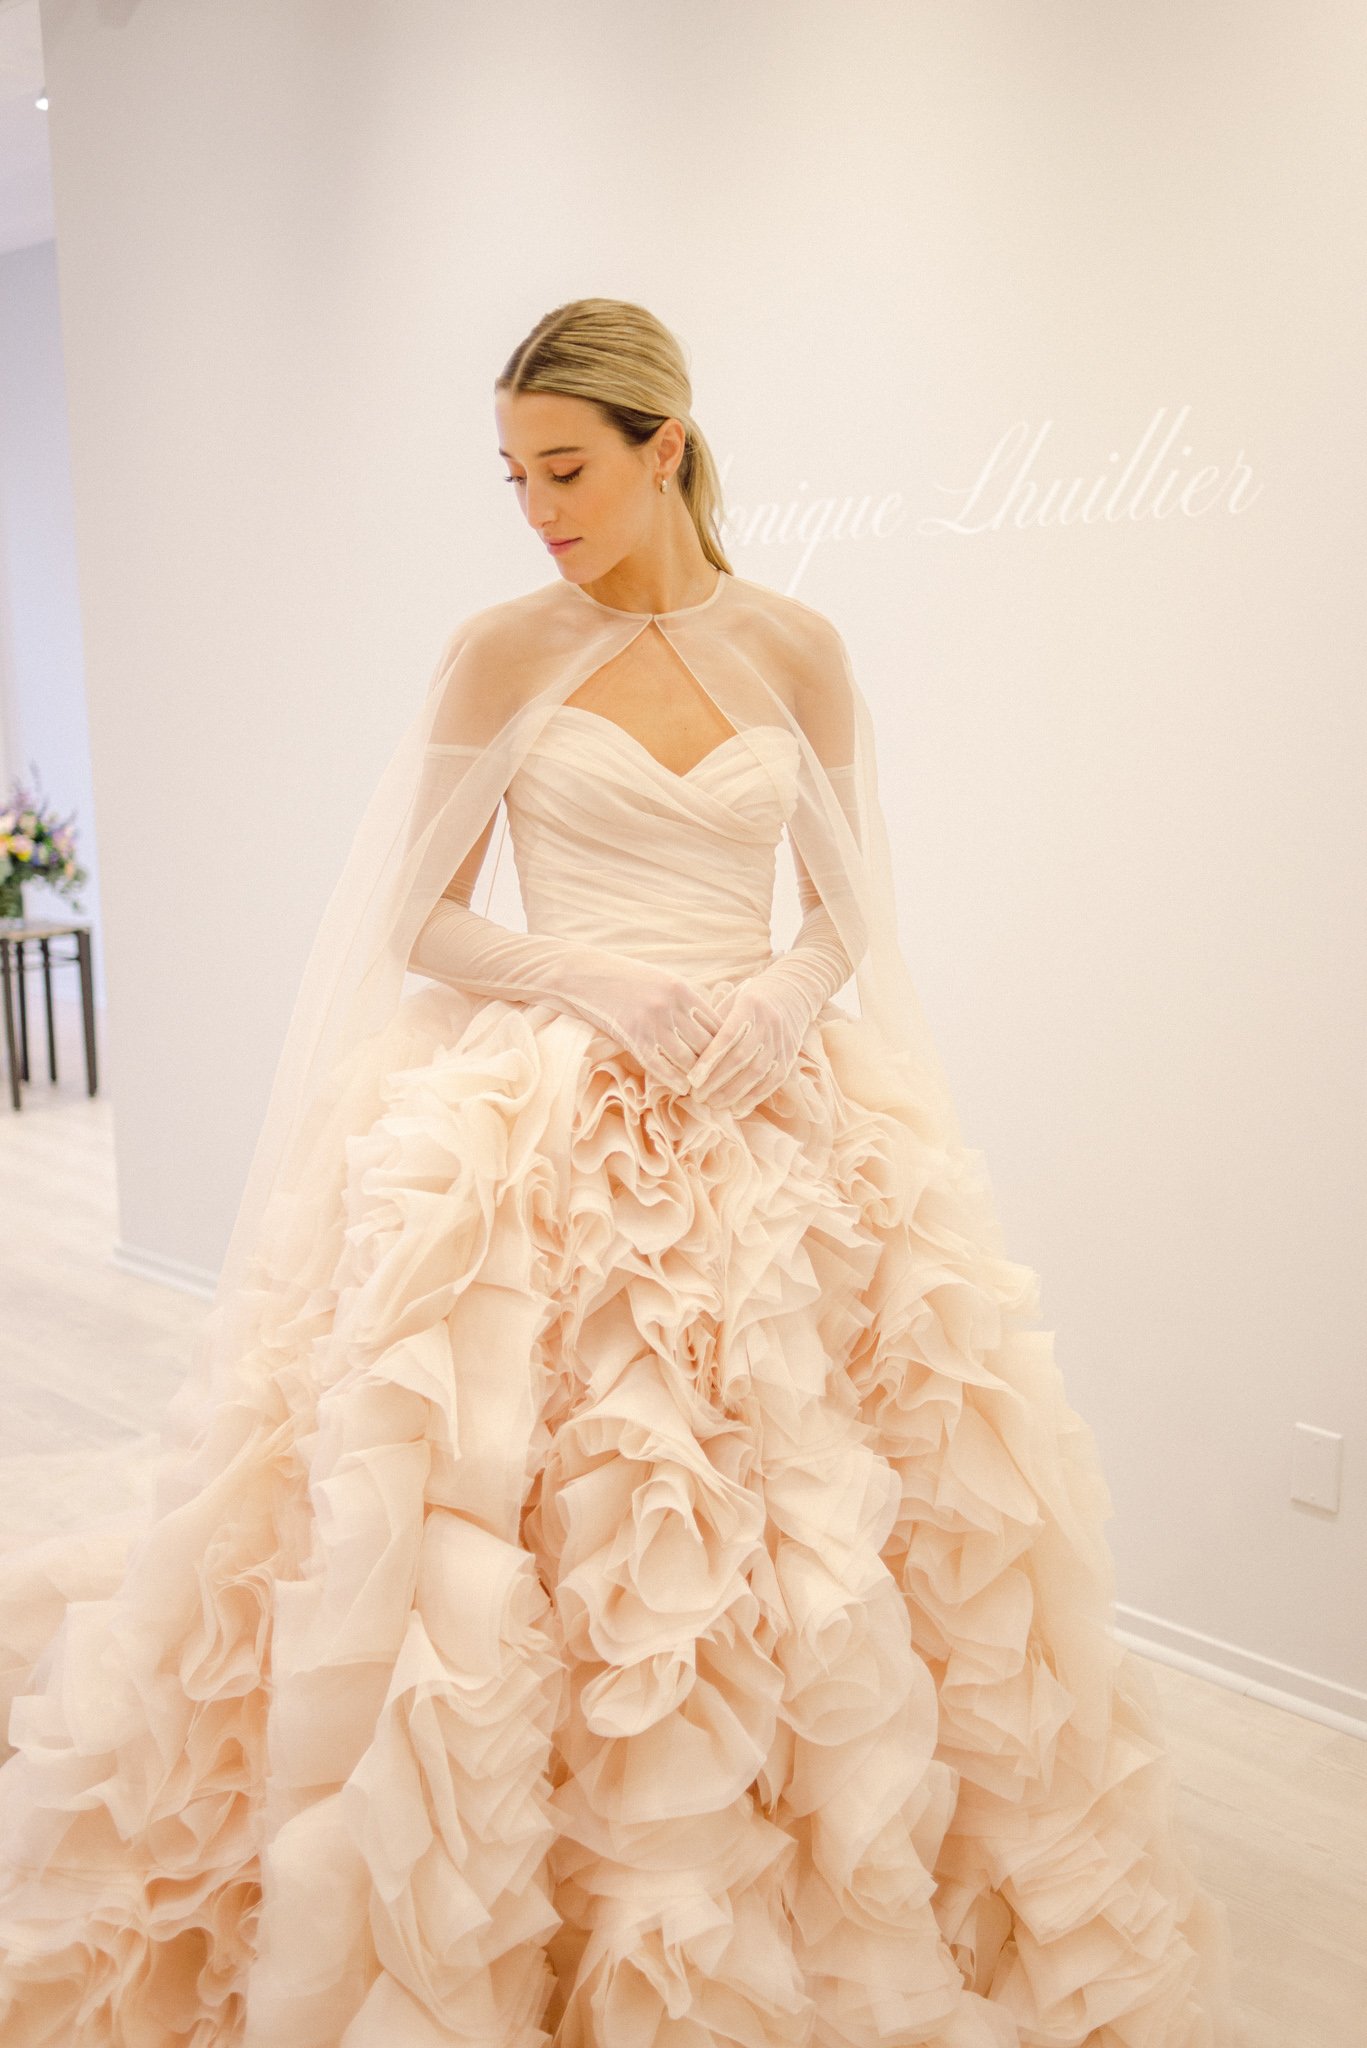 Monique Lhuillier "Charming" Gown